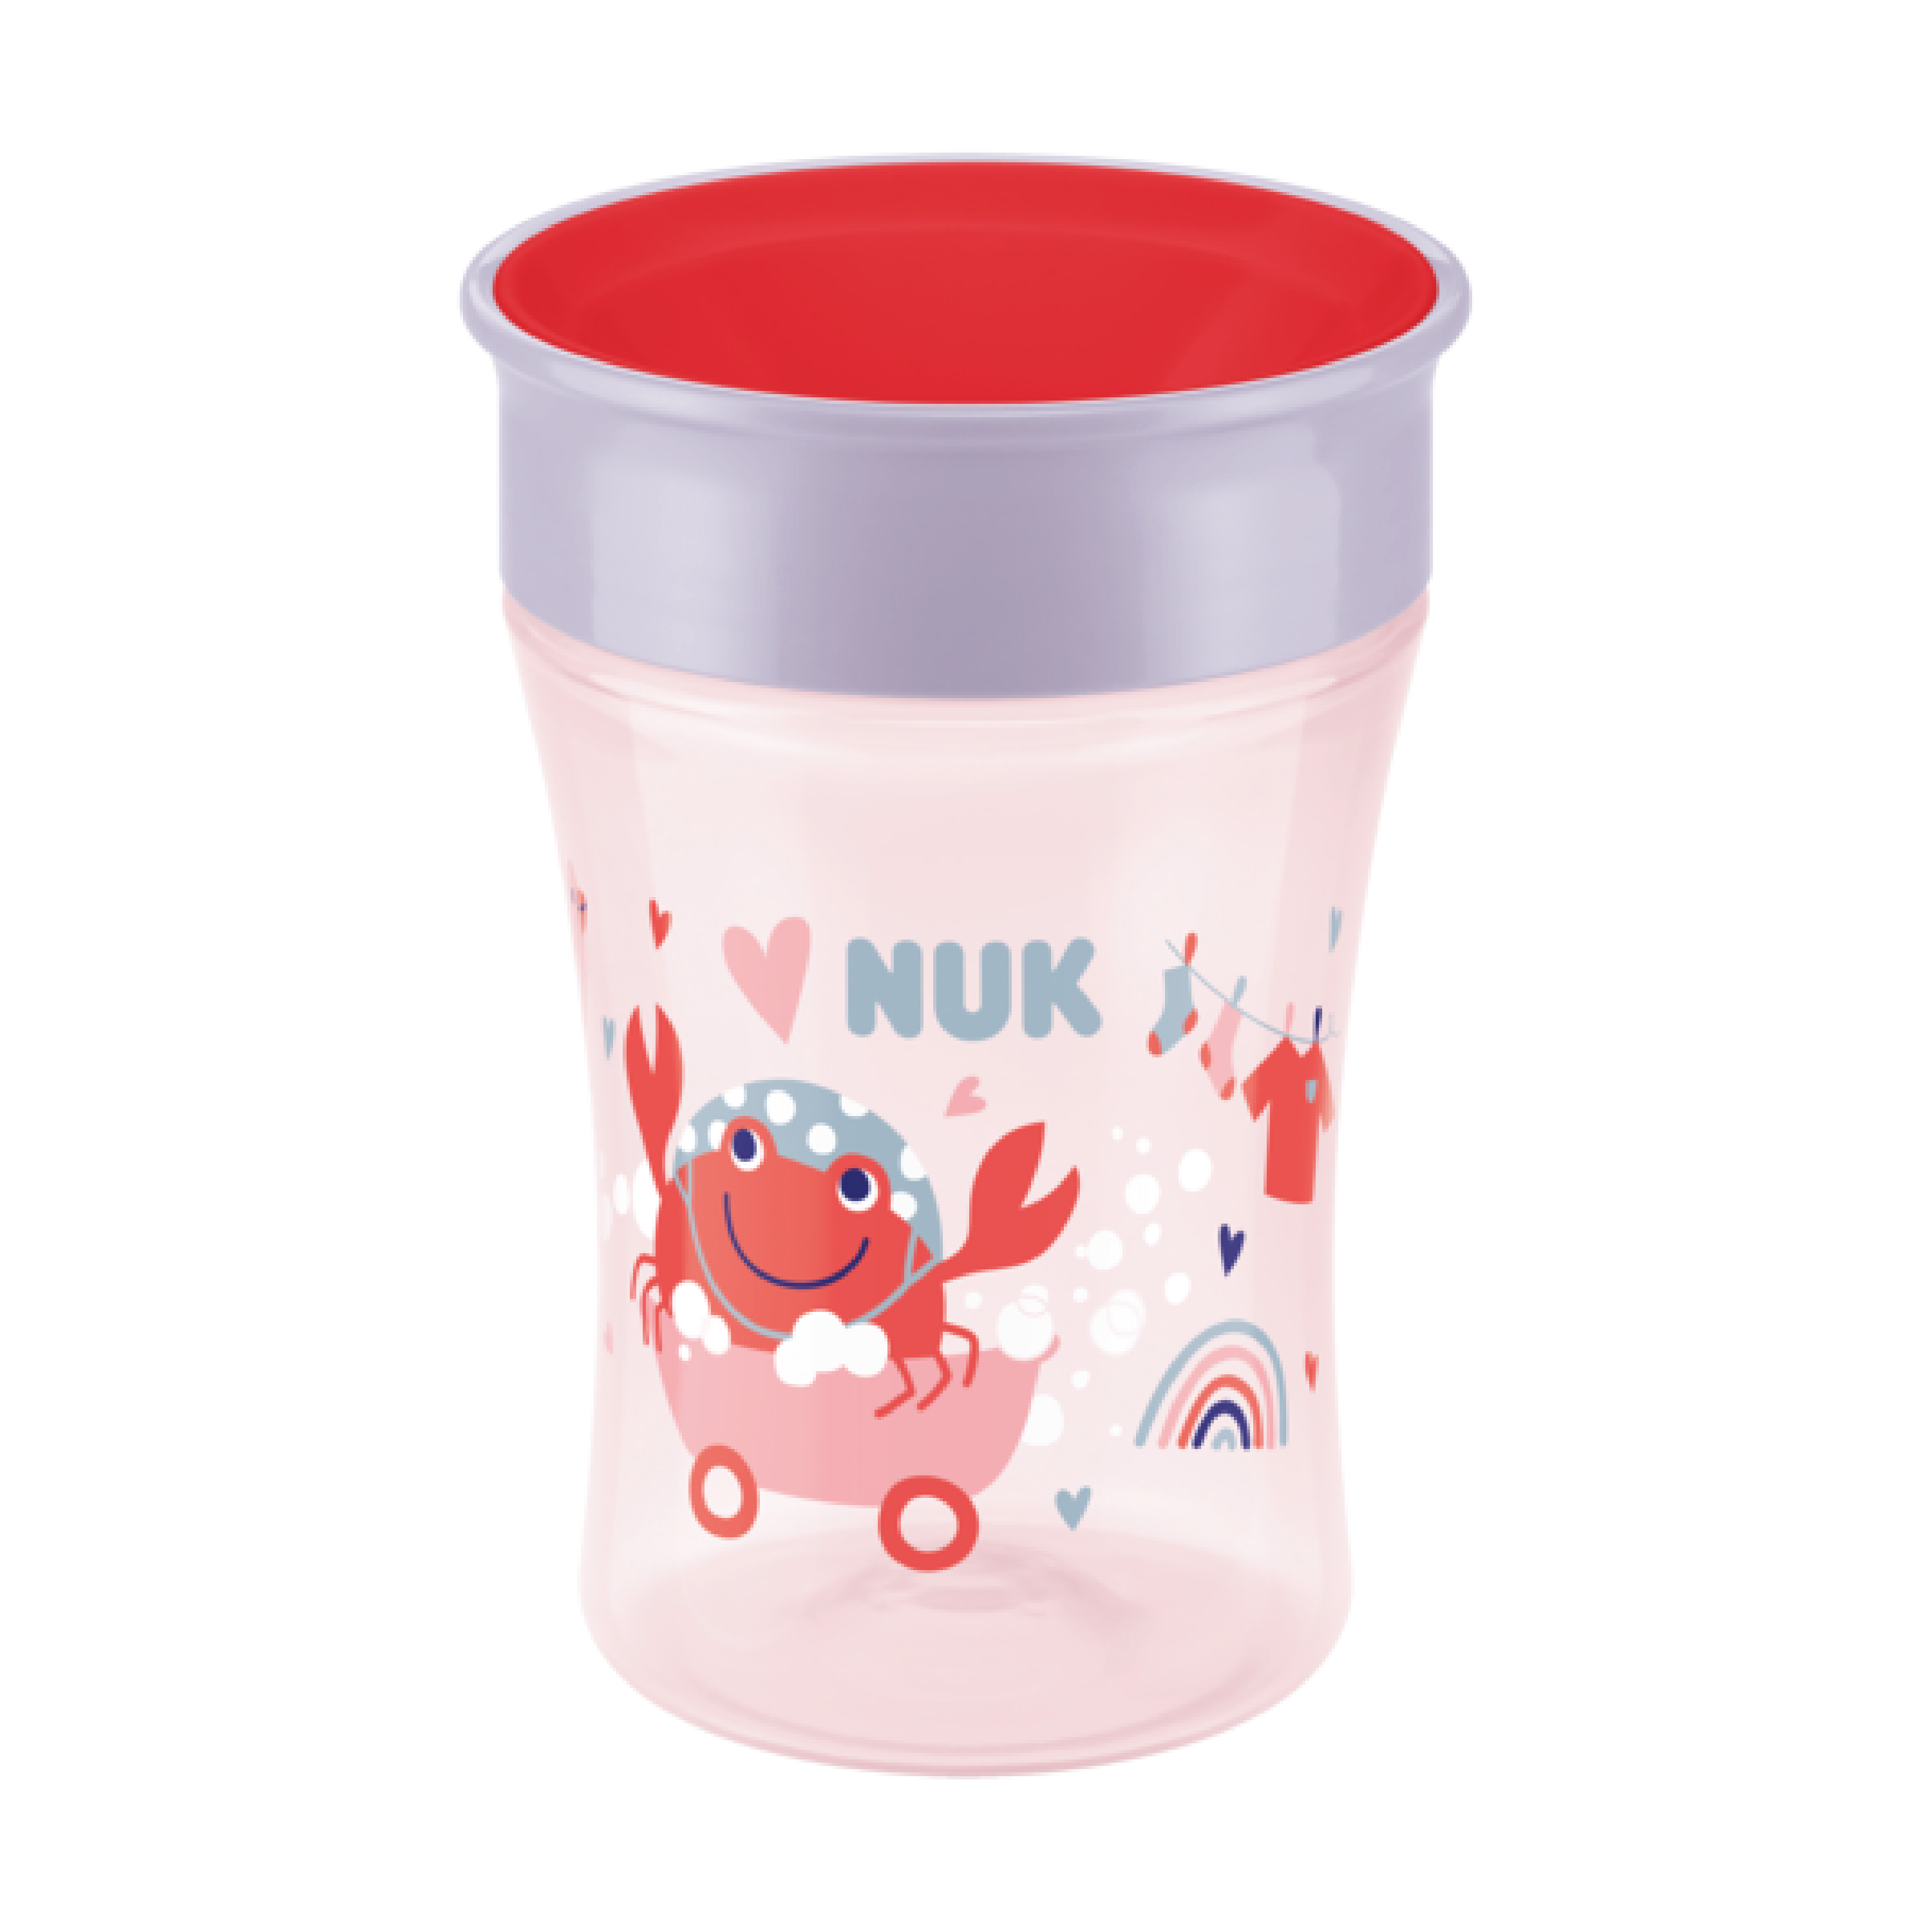 NUK Evolution Magic Cup, 8 mnd+, rød, 230 ml